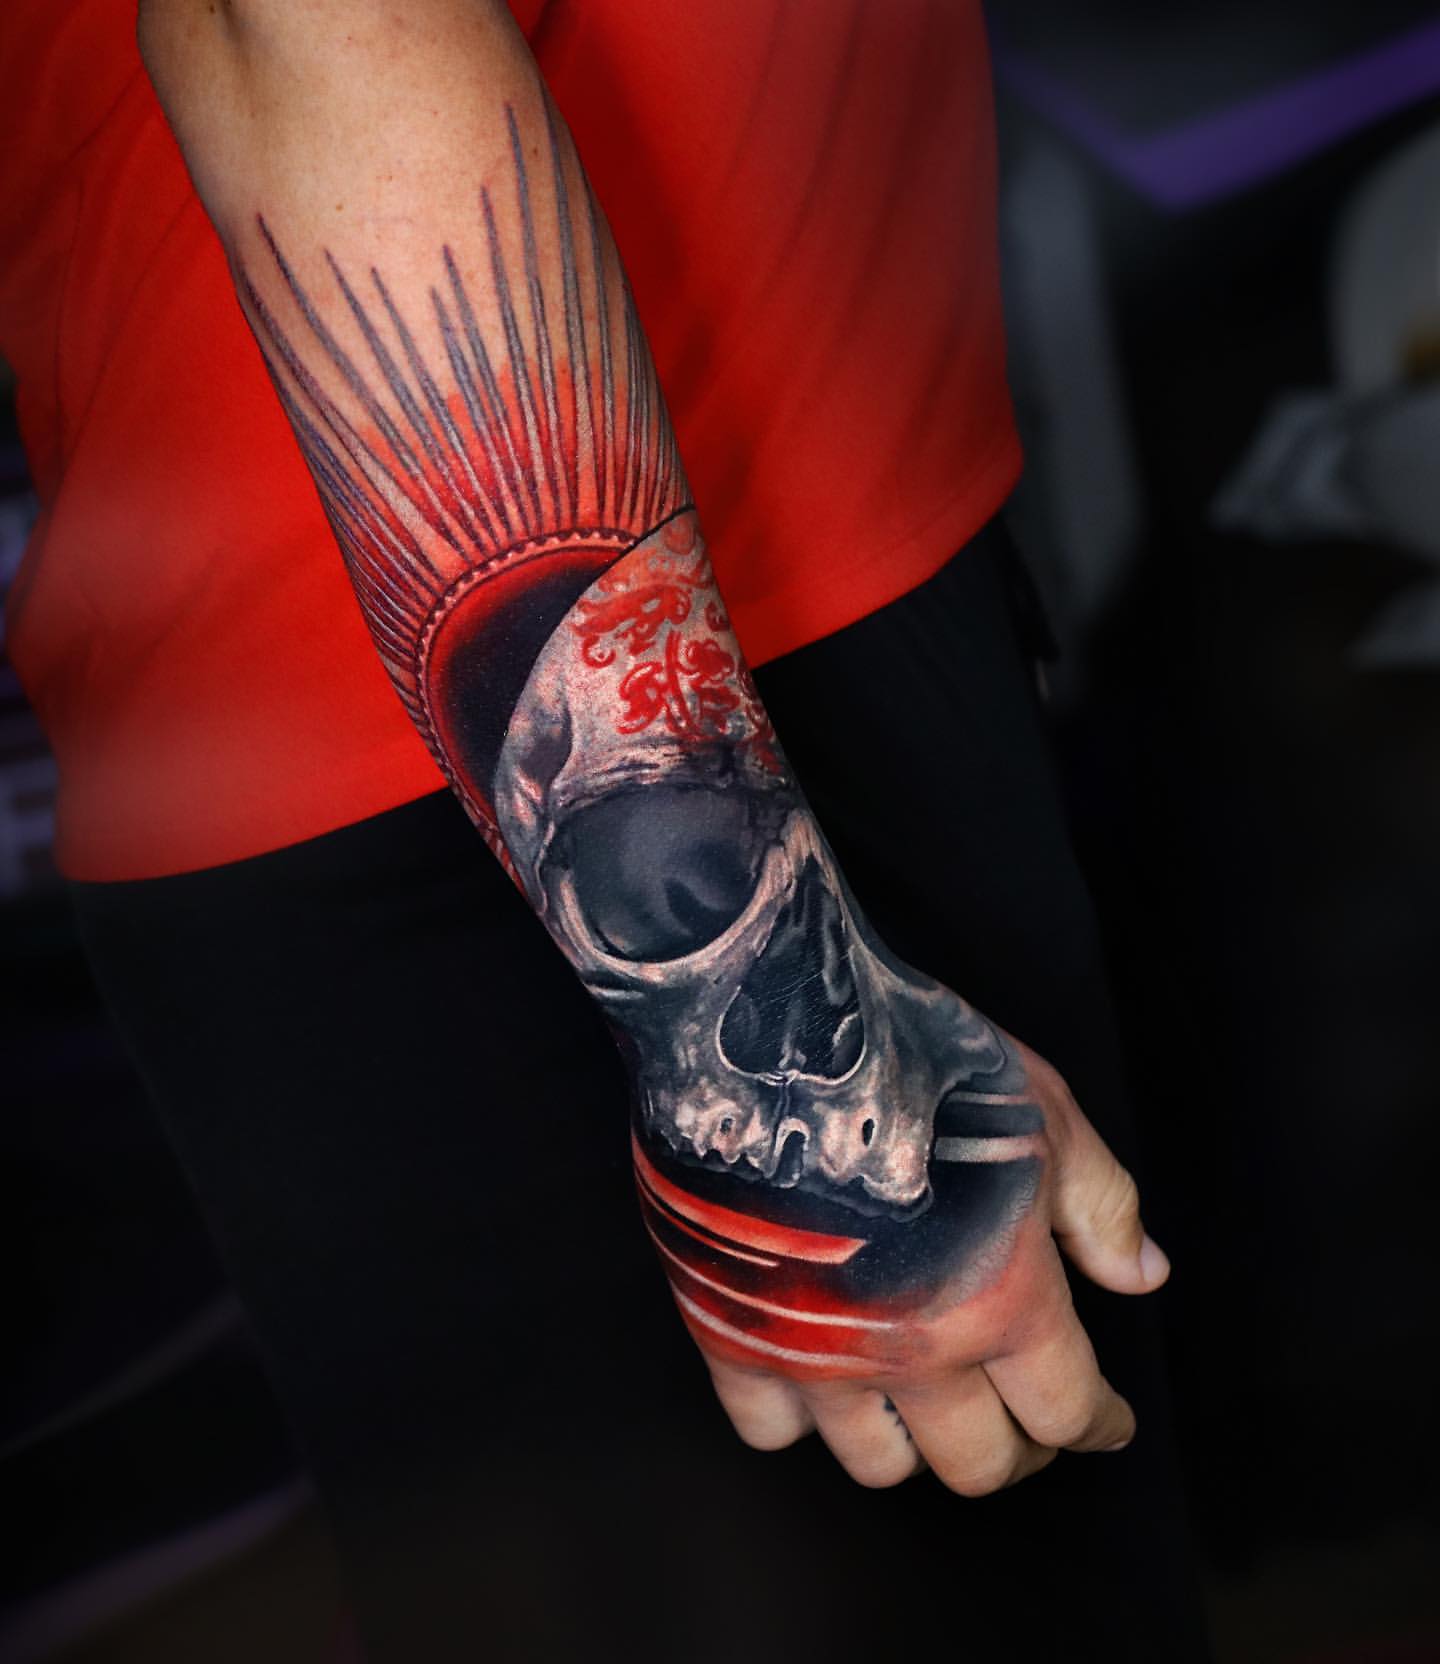 Temporary Tattoo Body Tattoo Sleeve Wrist Tattoo, Neck Tattoo, Back Tattoo  - AliExpress